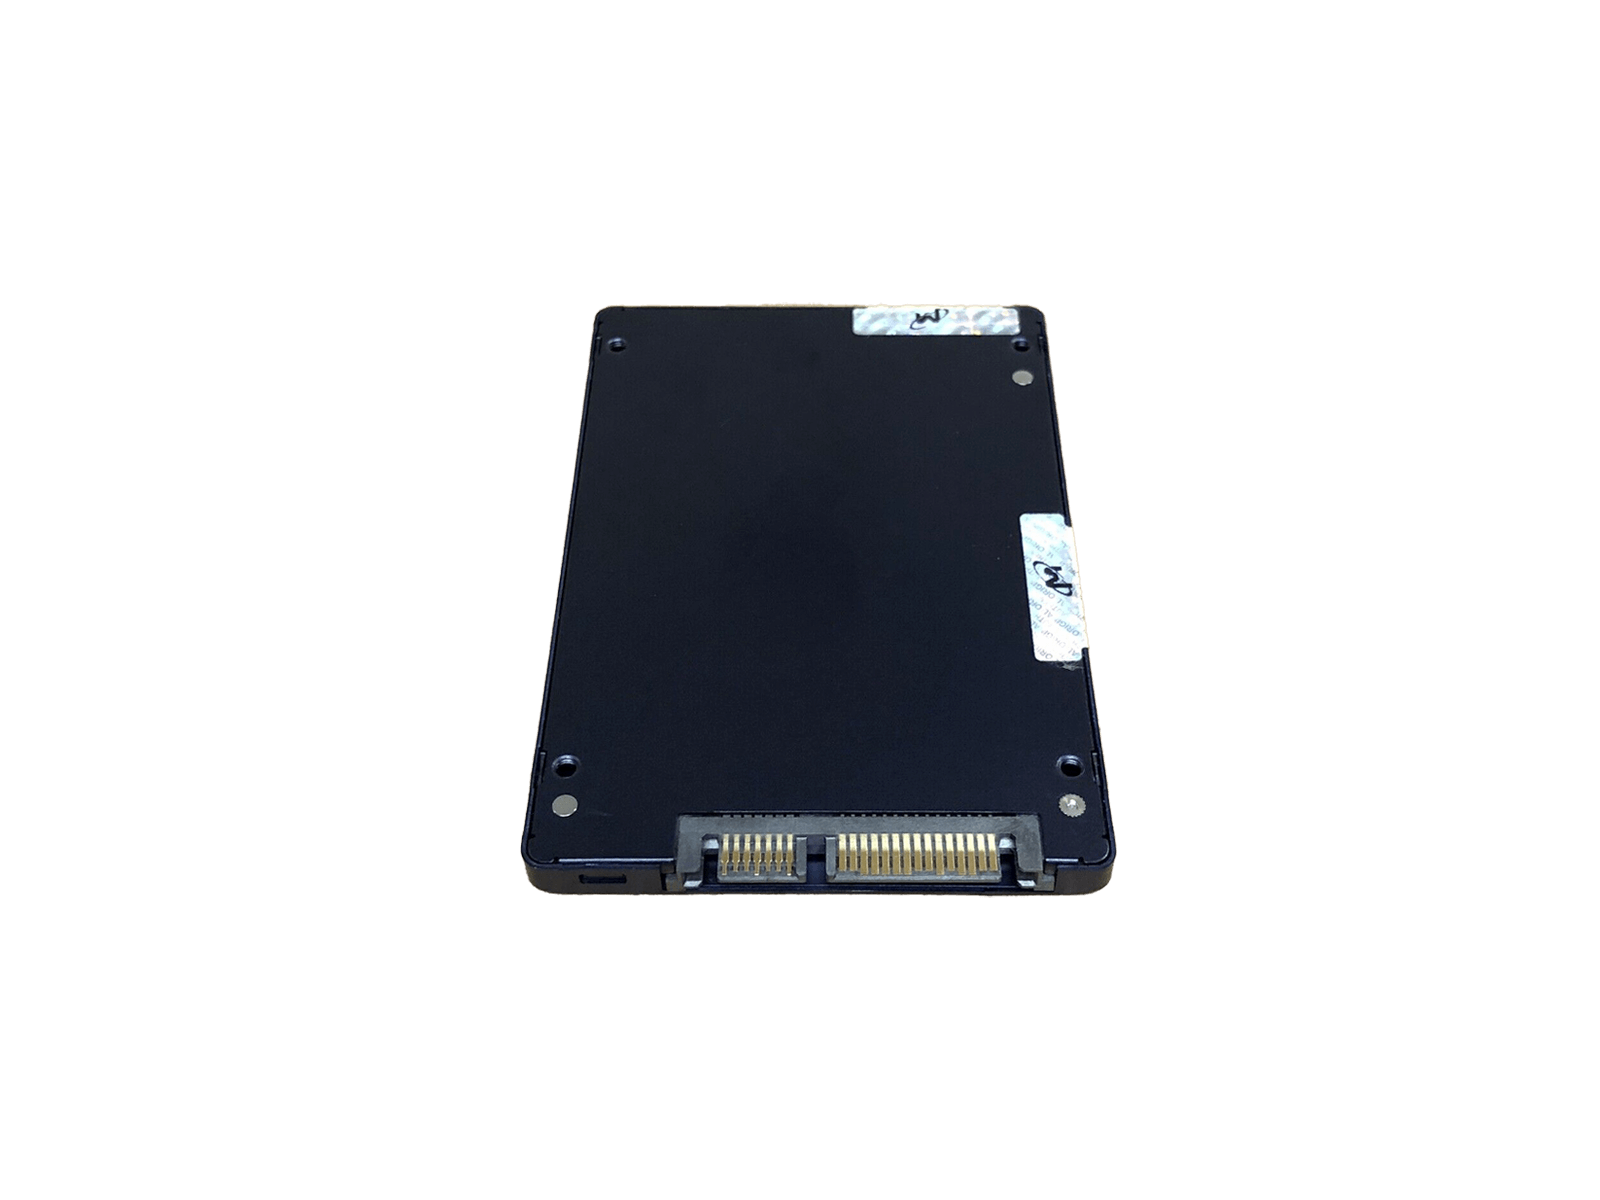 Micron MTFDDAK3T8TDC 3.84TB SATA 6Gb/s 2.5" SFF Read Intensive TLC SSD Solid State Drive